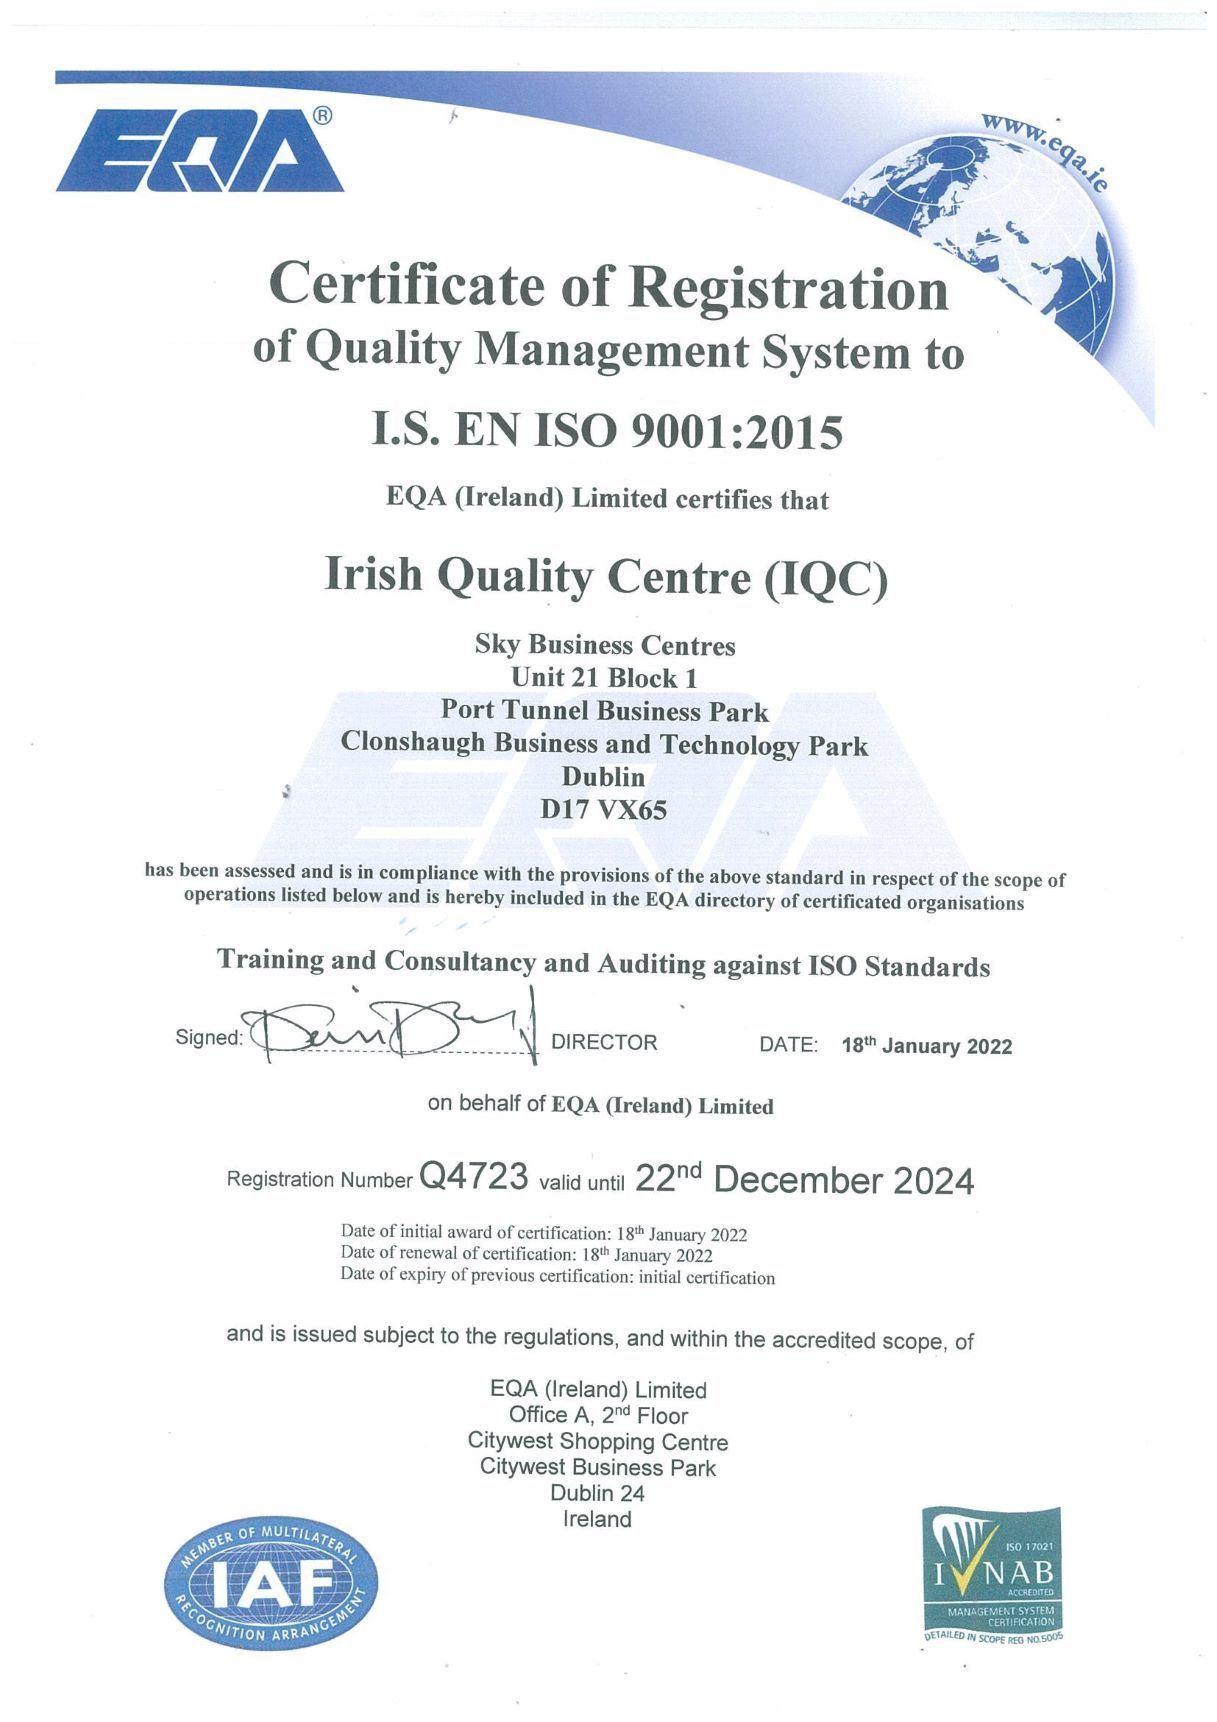 ISO 9001:2015 Dublin Certificate